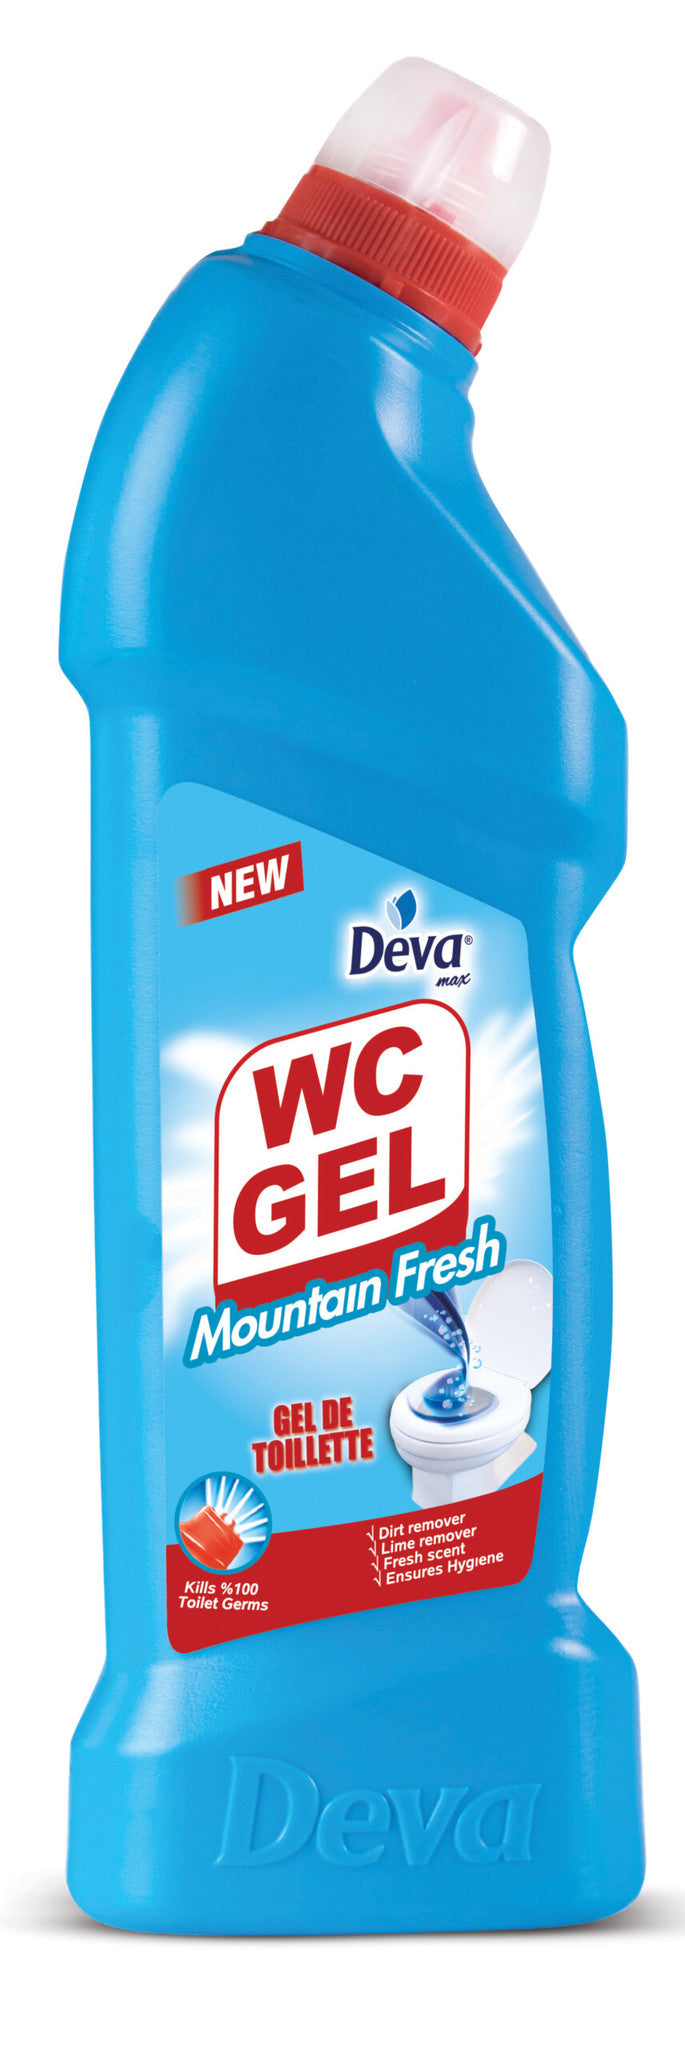 750 ml bottle of deva wc gel mountain fresh